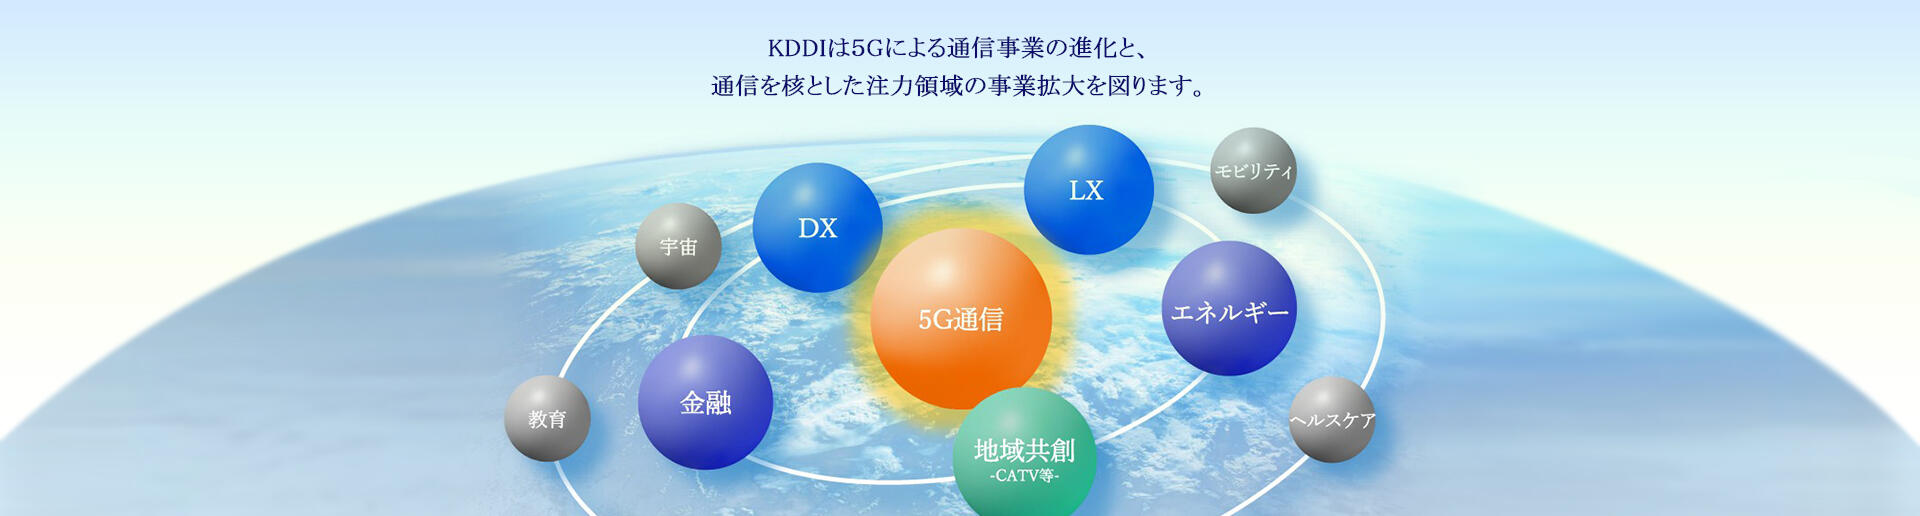 KDDIは5Gによる通信事業の進化と、通信を核とした注力領域の事業拡大を図ります。